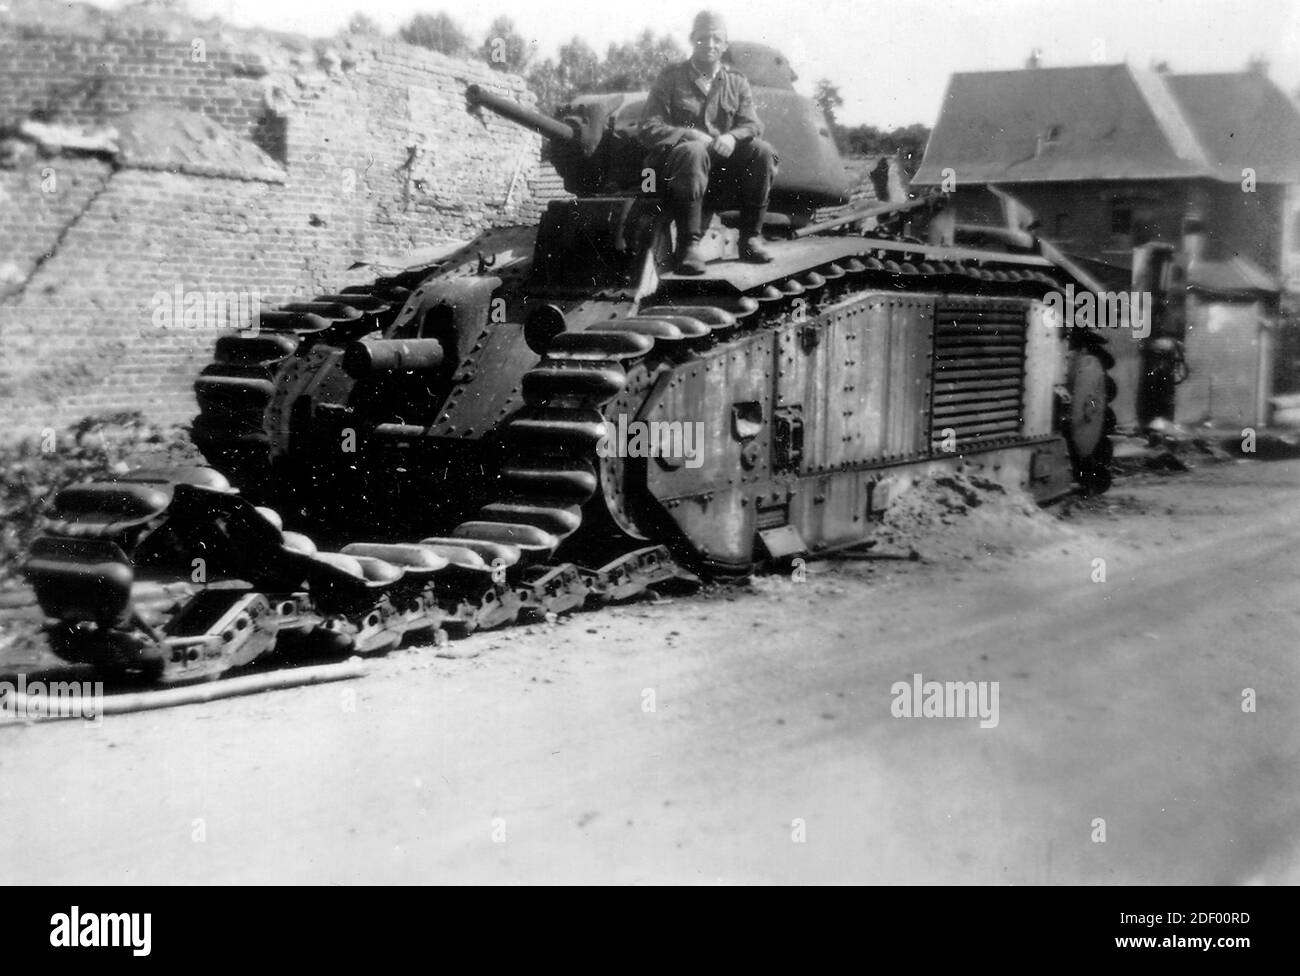 Renault Tank nombrado SENEGAL perteneciente a la 15ª BCC, 1 ª sección de la primera Compañía; destruido por el arma antitanque el 19 de mayo de 1940 Foto de stock